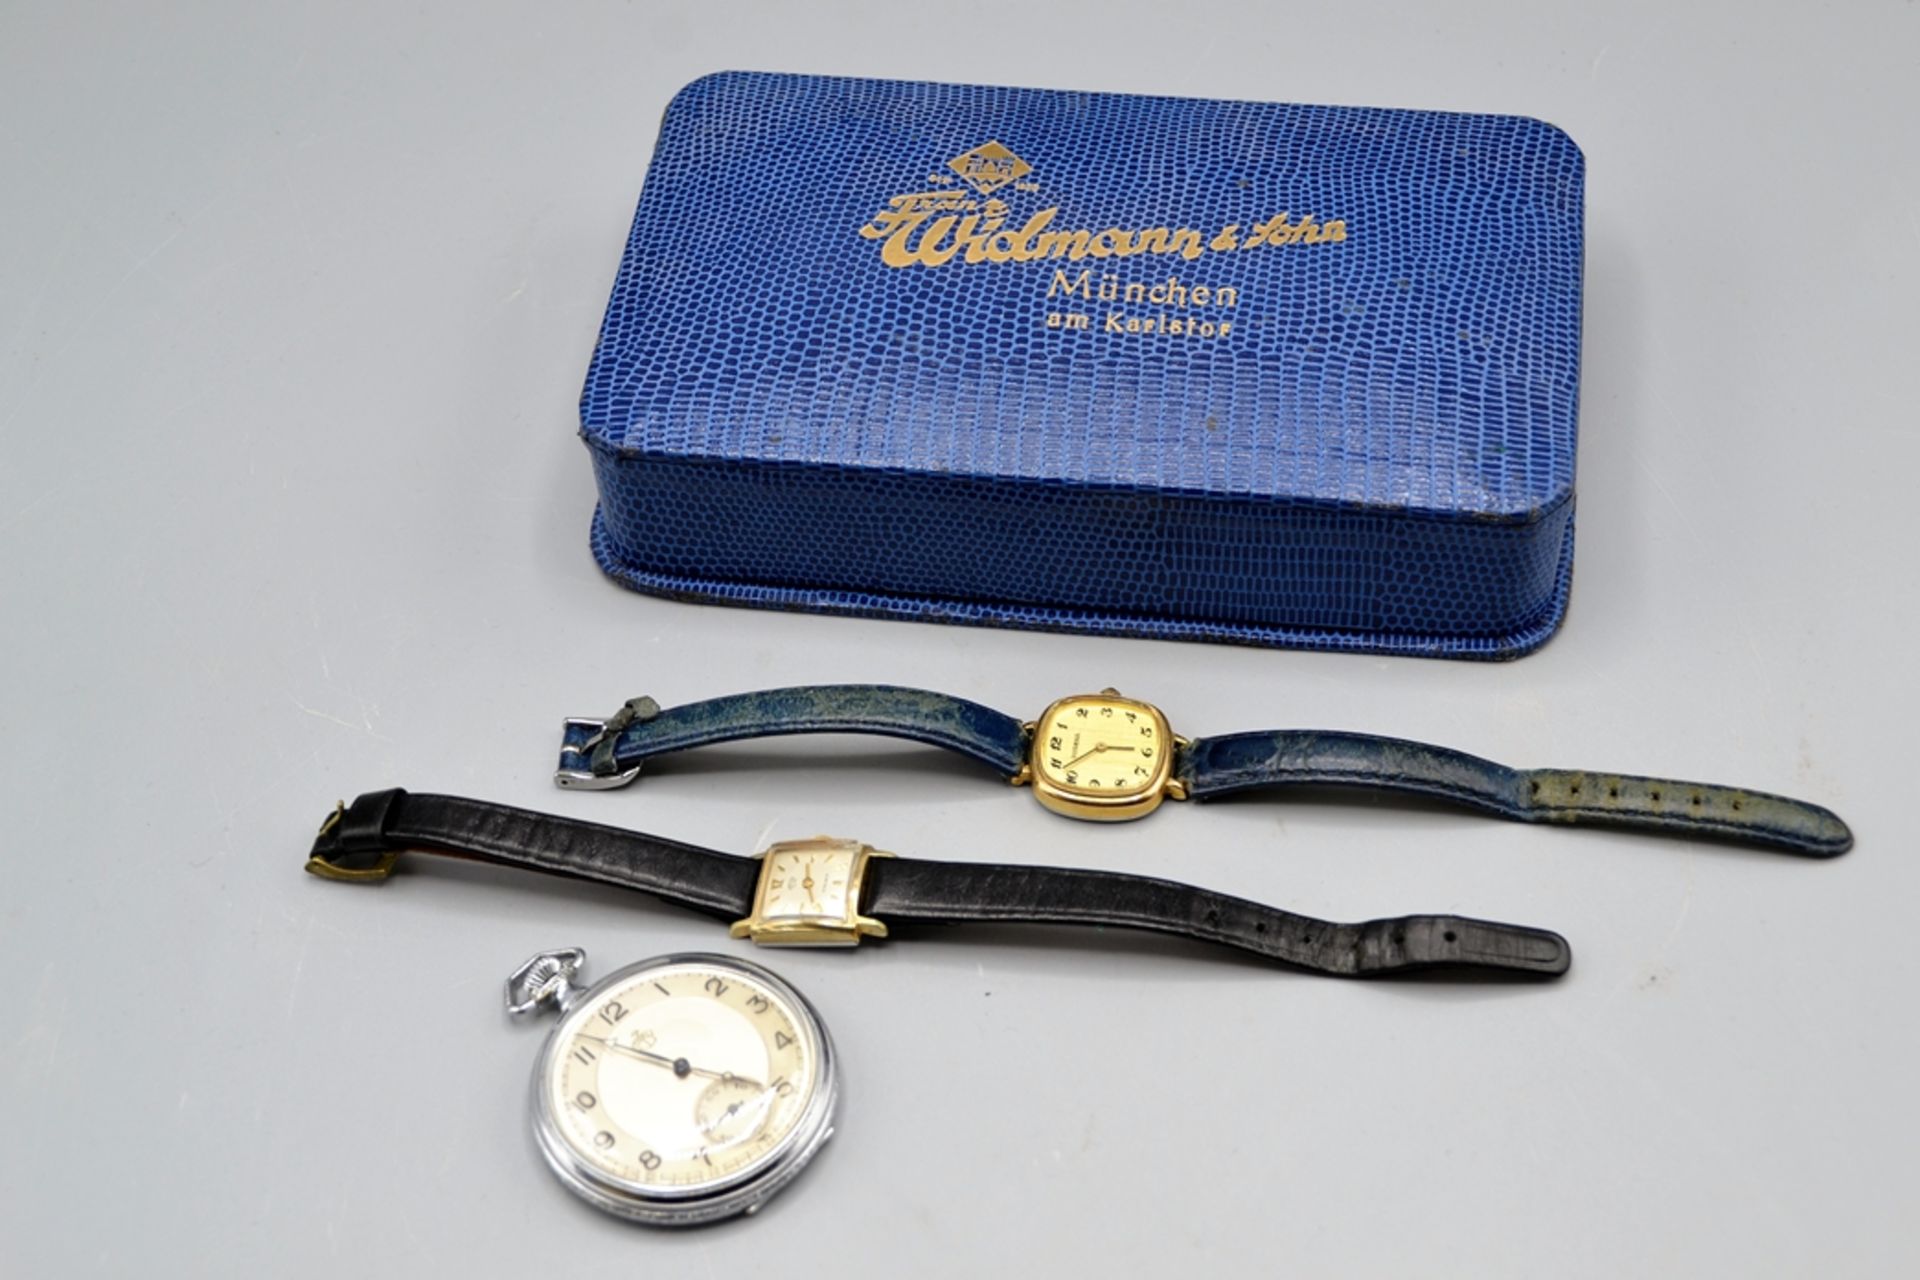 Uhren Wecker Taschenuhr Diverses Konvolut 6-teilig, Uhren von Dugena Peter Arctos Mauthe, Thiel Tas - Image 2 of 2